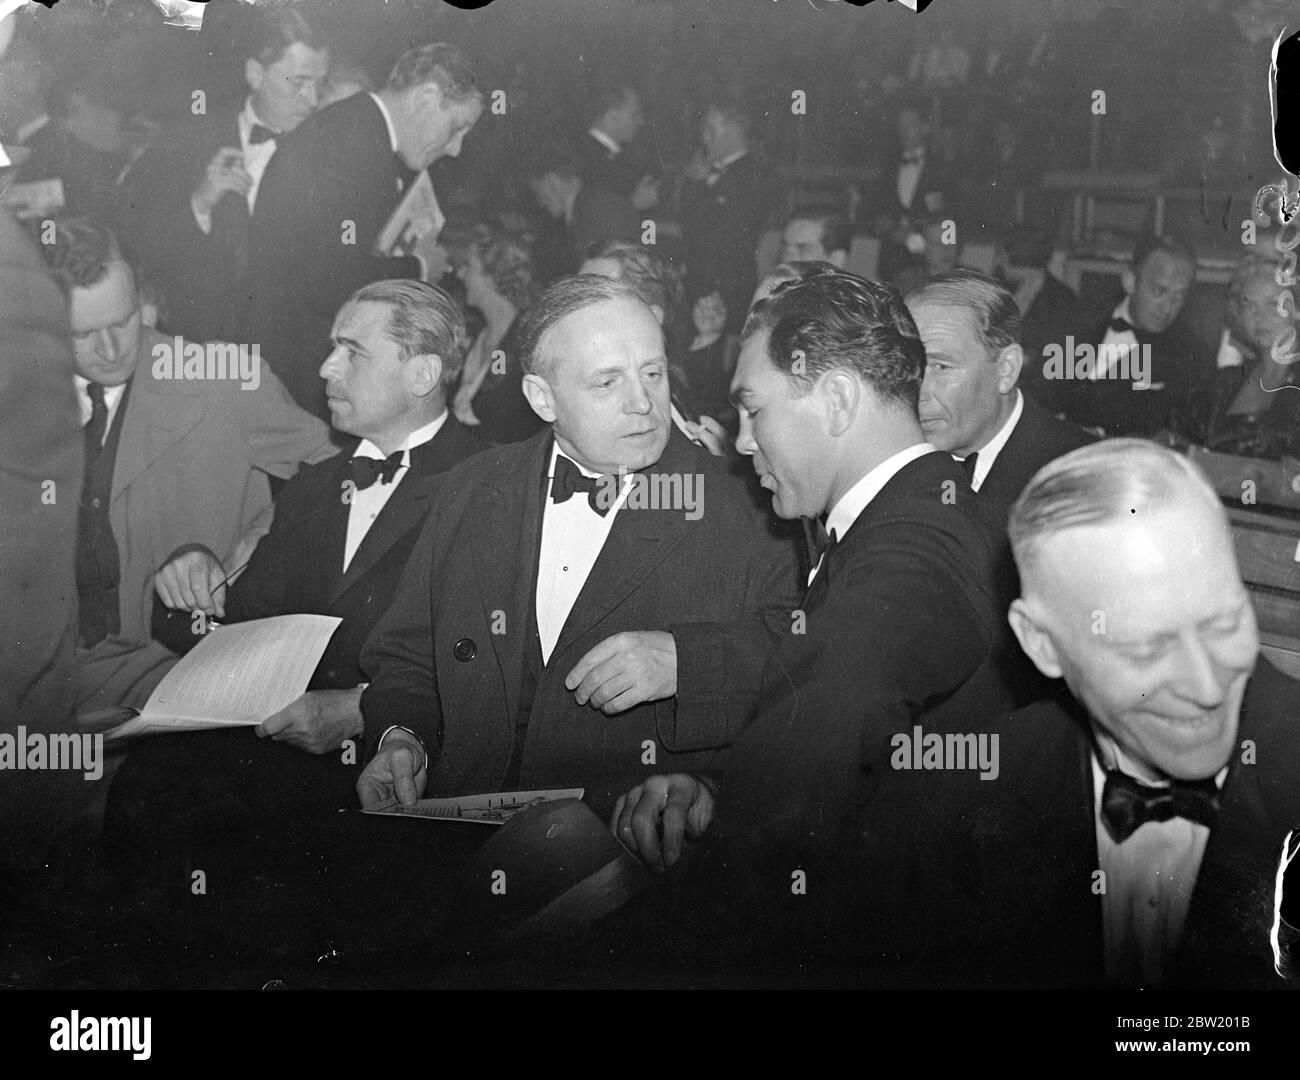 Max Schmeling und der deutsche Botschafter von Ribbentrop sehen Farrs K.O.-Sieg über Neusel. Max Schmeling, der deutsche Schwergewicht, mit dem der Welshman möglicherweise zusammenkommt, sah Tommy Farr, wie er seinen Landsmann Walter Neusel in der dritten Runde in der Harringay Arena, London, ausschmettern konnte. Foto zeigt: Max Schmeling im Gespräch mit dem deutschen Botschafter, Herrn Joachim von Ribbentrop, am 15. Juni 1937 Stockfoto